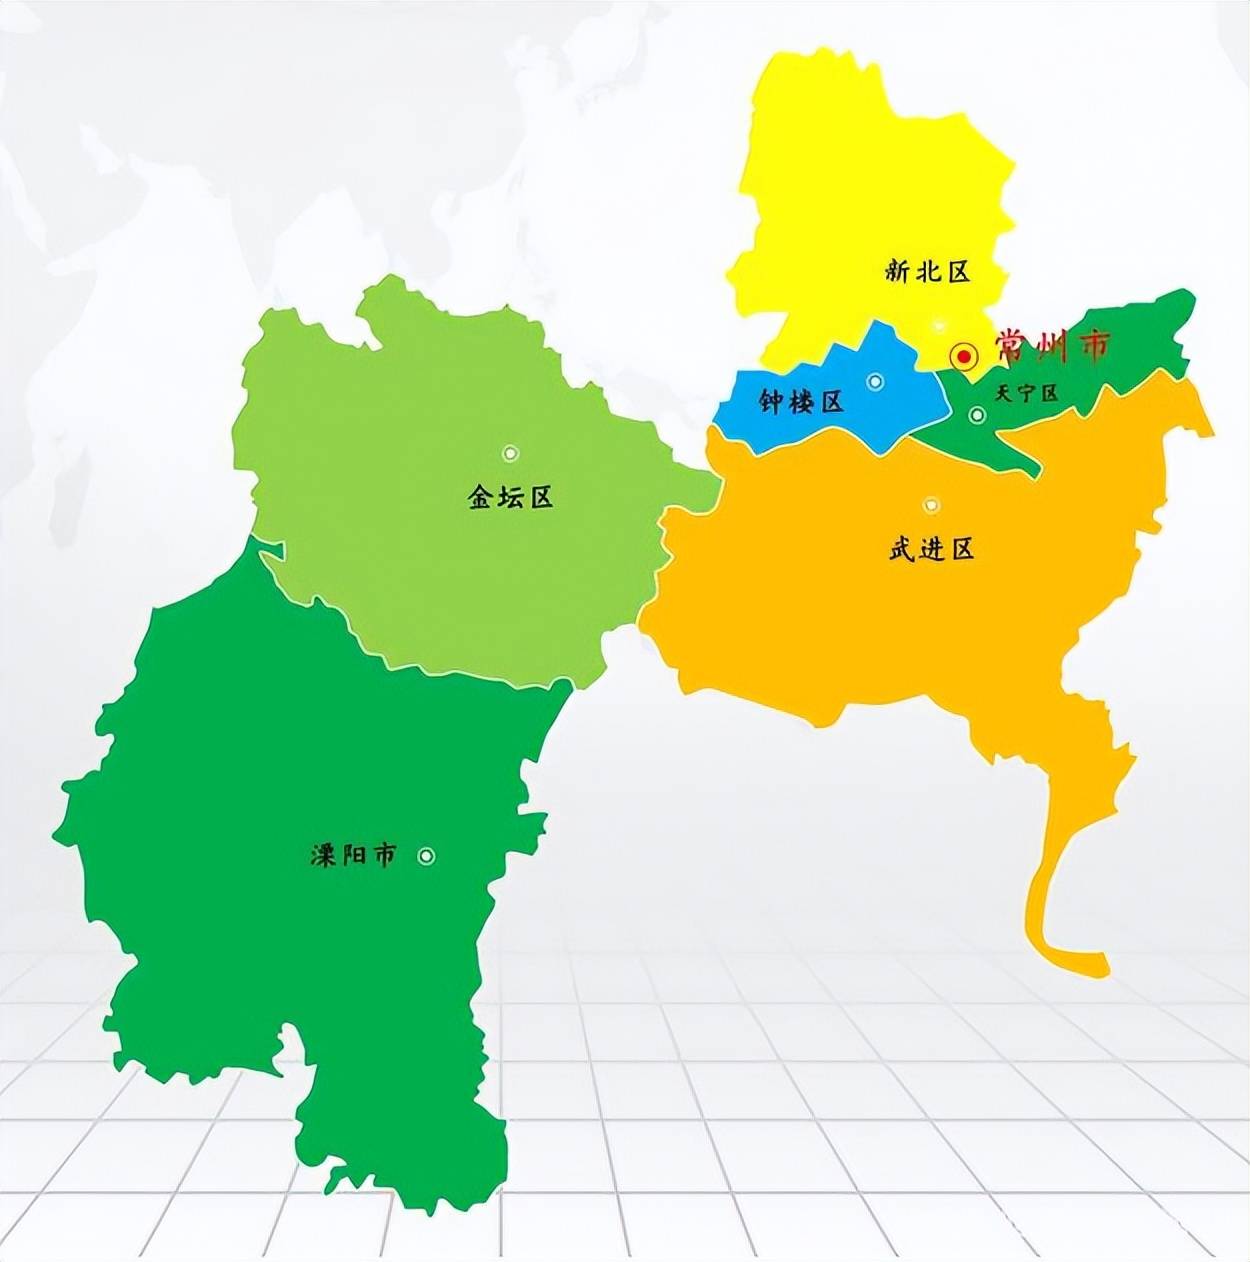 常州市的区划变动,江苏省的经济强市之一,为何有6个区县?